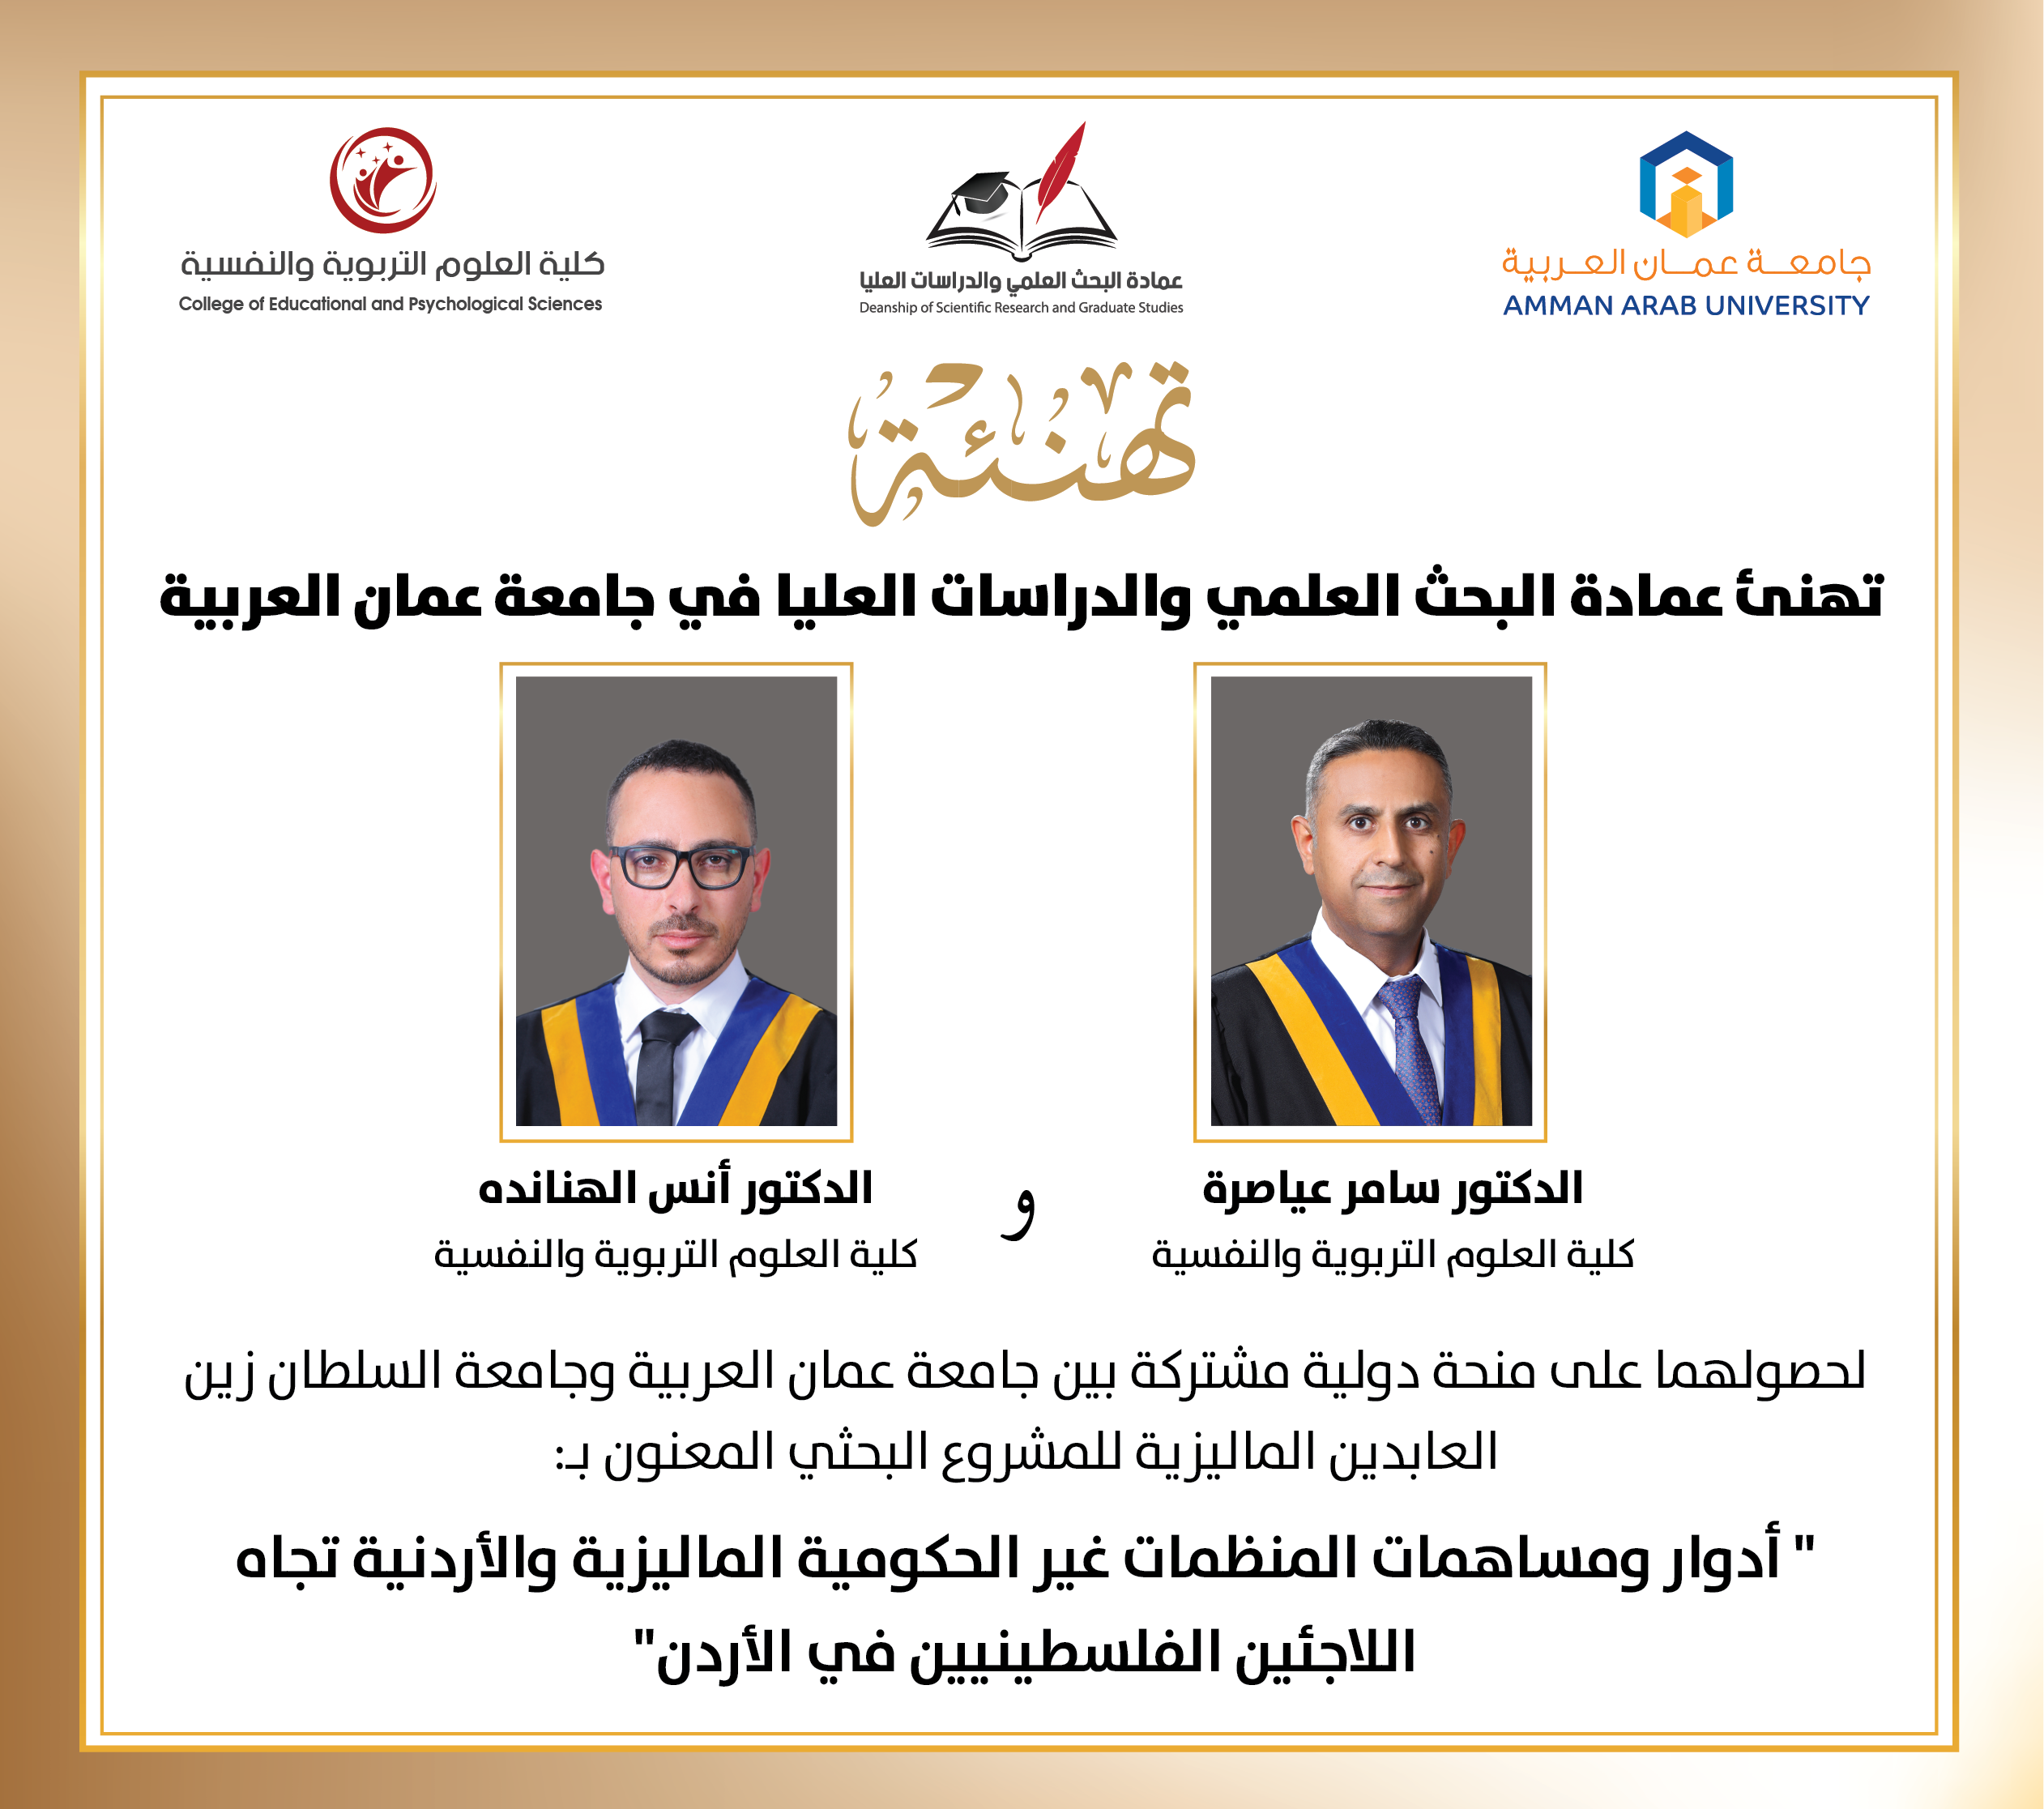 جامعة عمان العربية تهنئ عضوي هيئة التدريس العياصرة والهناندة  لحصولهم على منحة دولية مشتركة